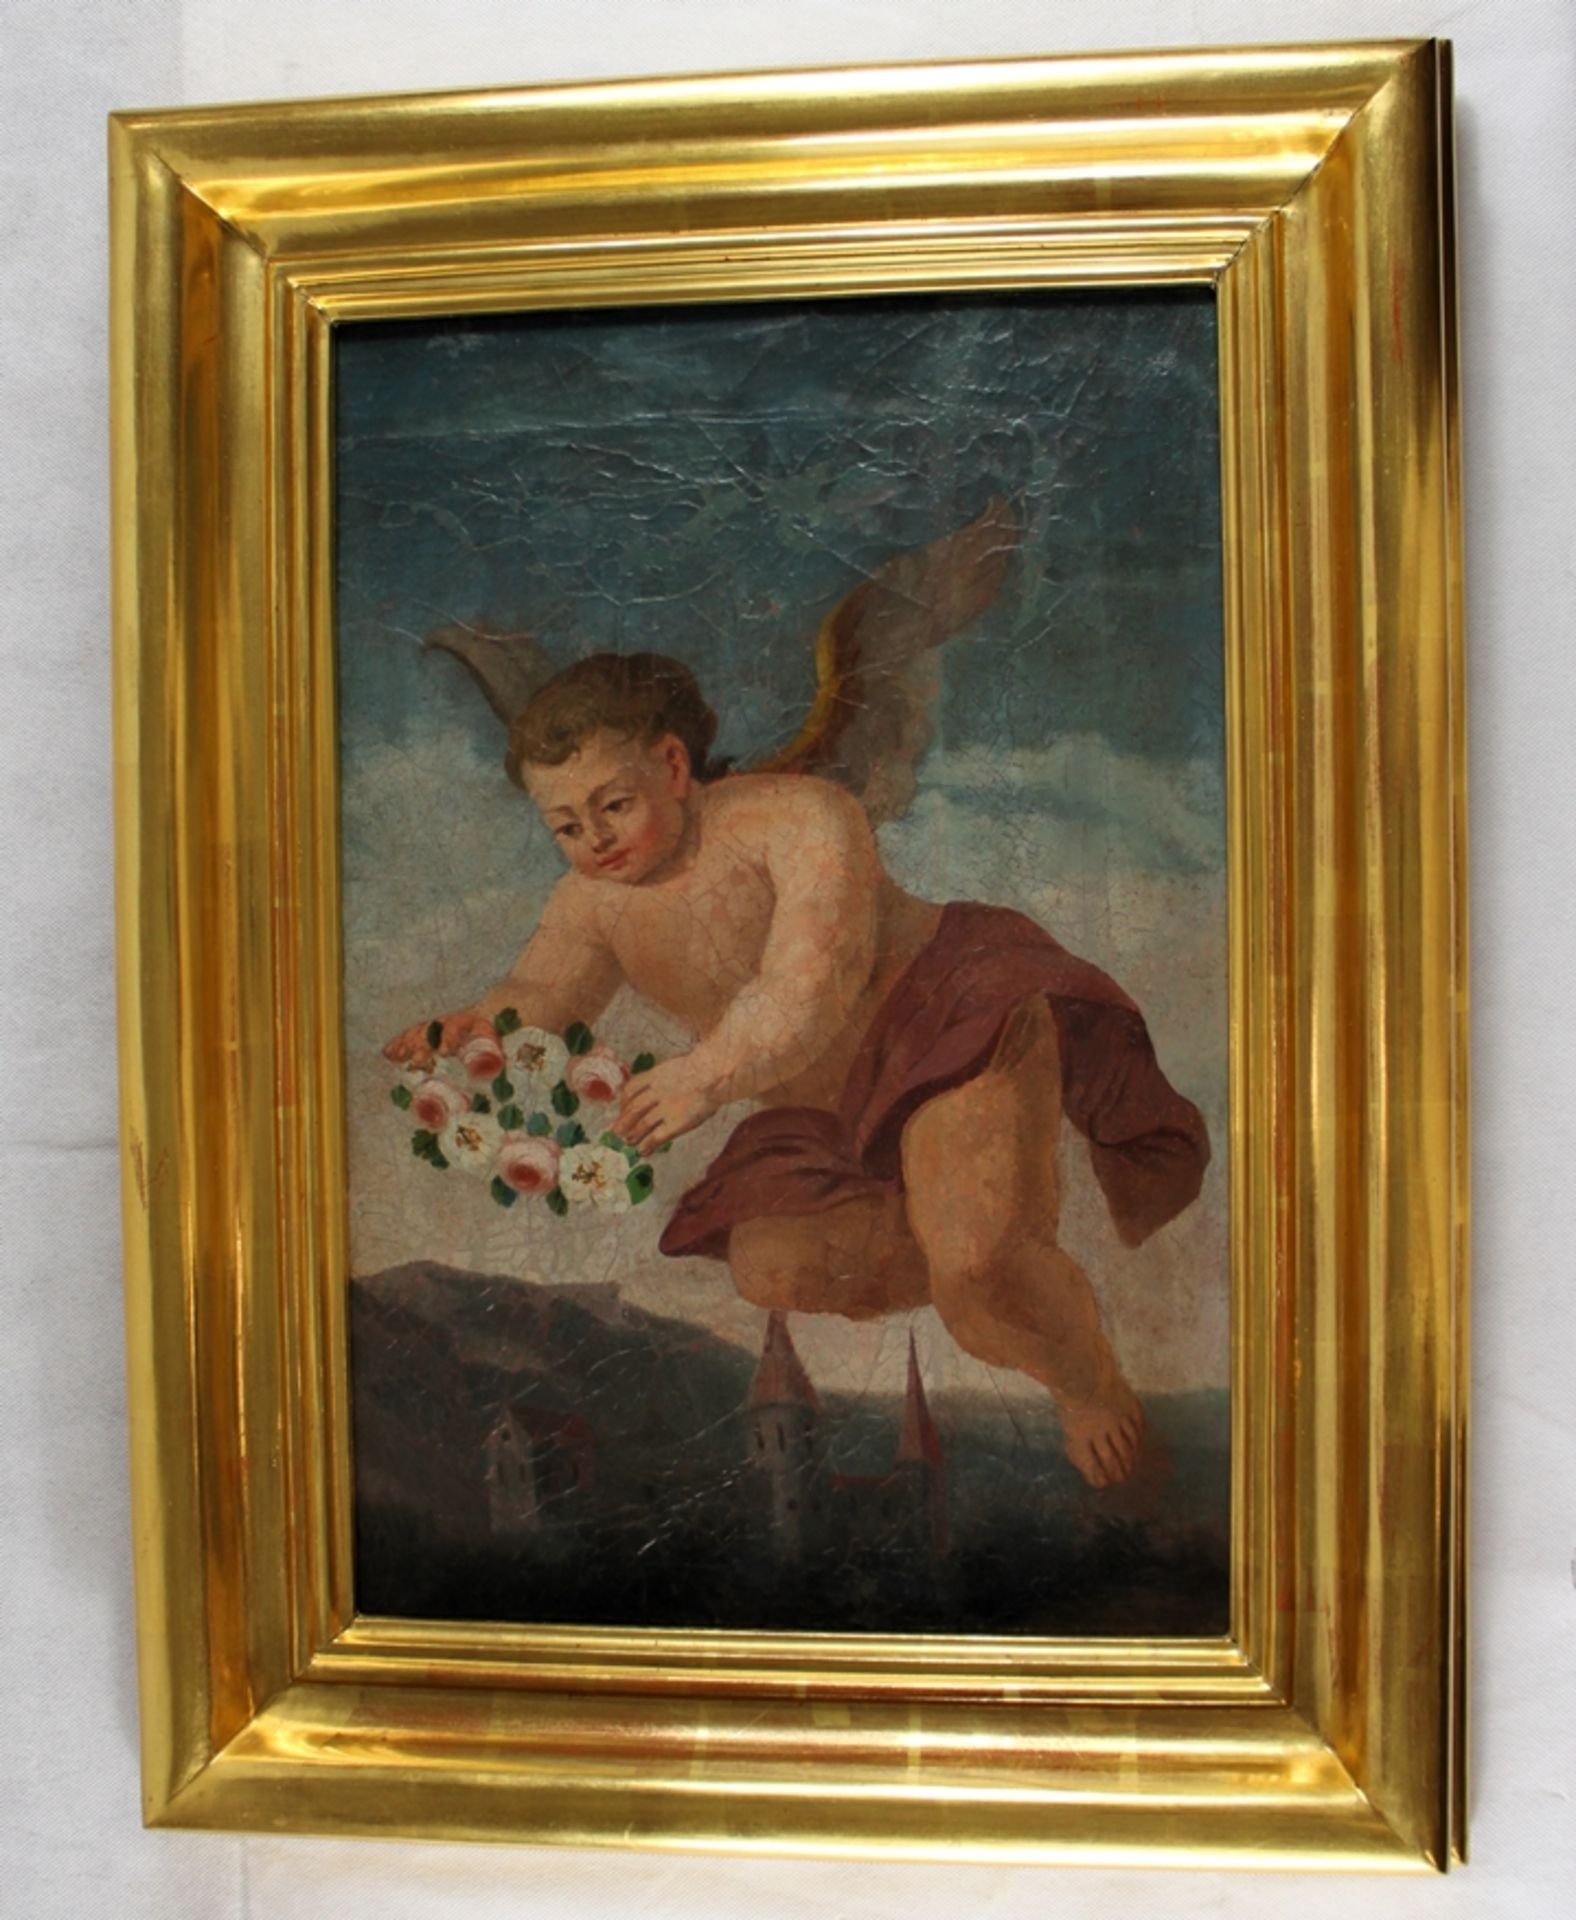 Putto m. Ansicht wohl Kloster Prüfening Gemälde 18 Jh., doubliert, Krakelee, toller Blattgold Rahme